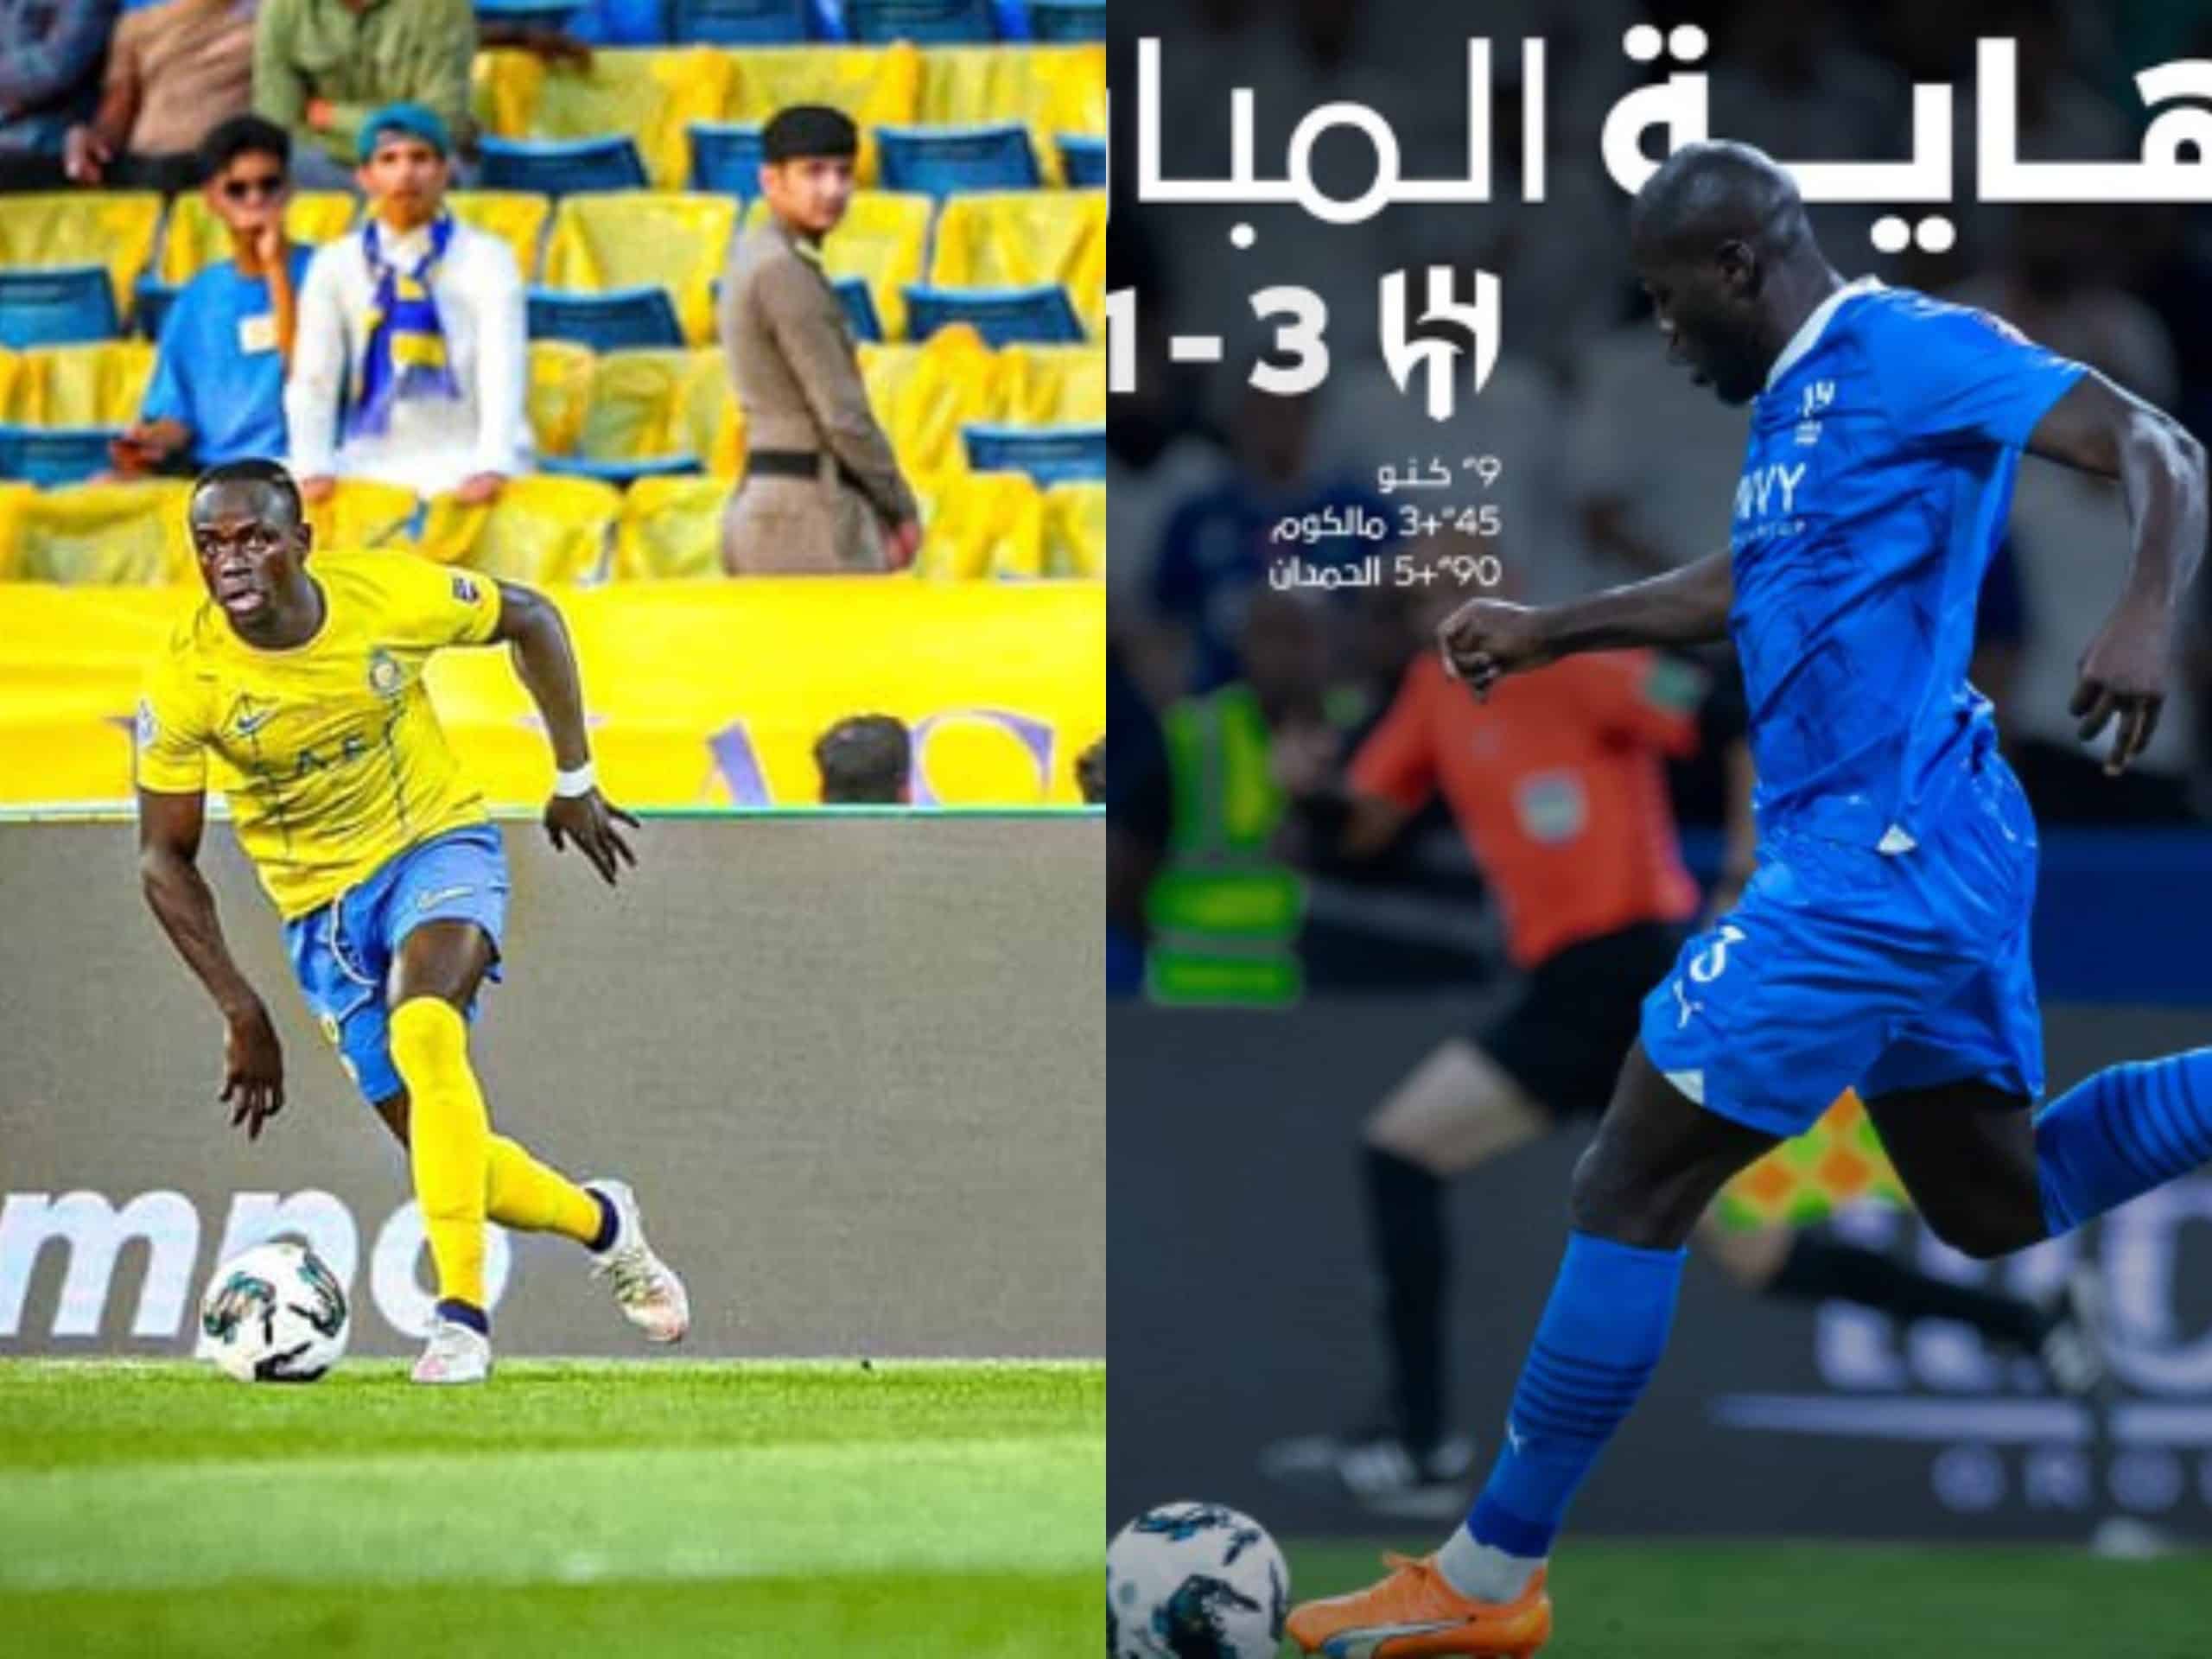 Coupe Arabe des clubs champions : Sadio Mané et Koulibaly se retrouvent en finale